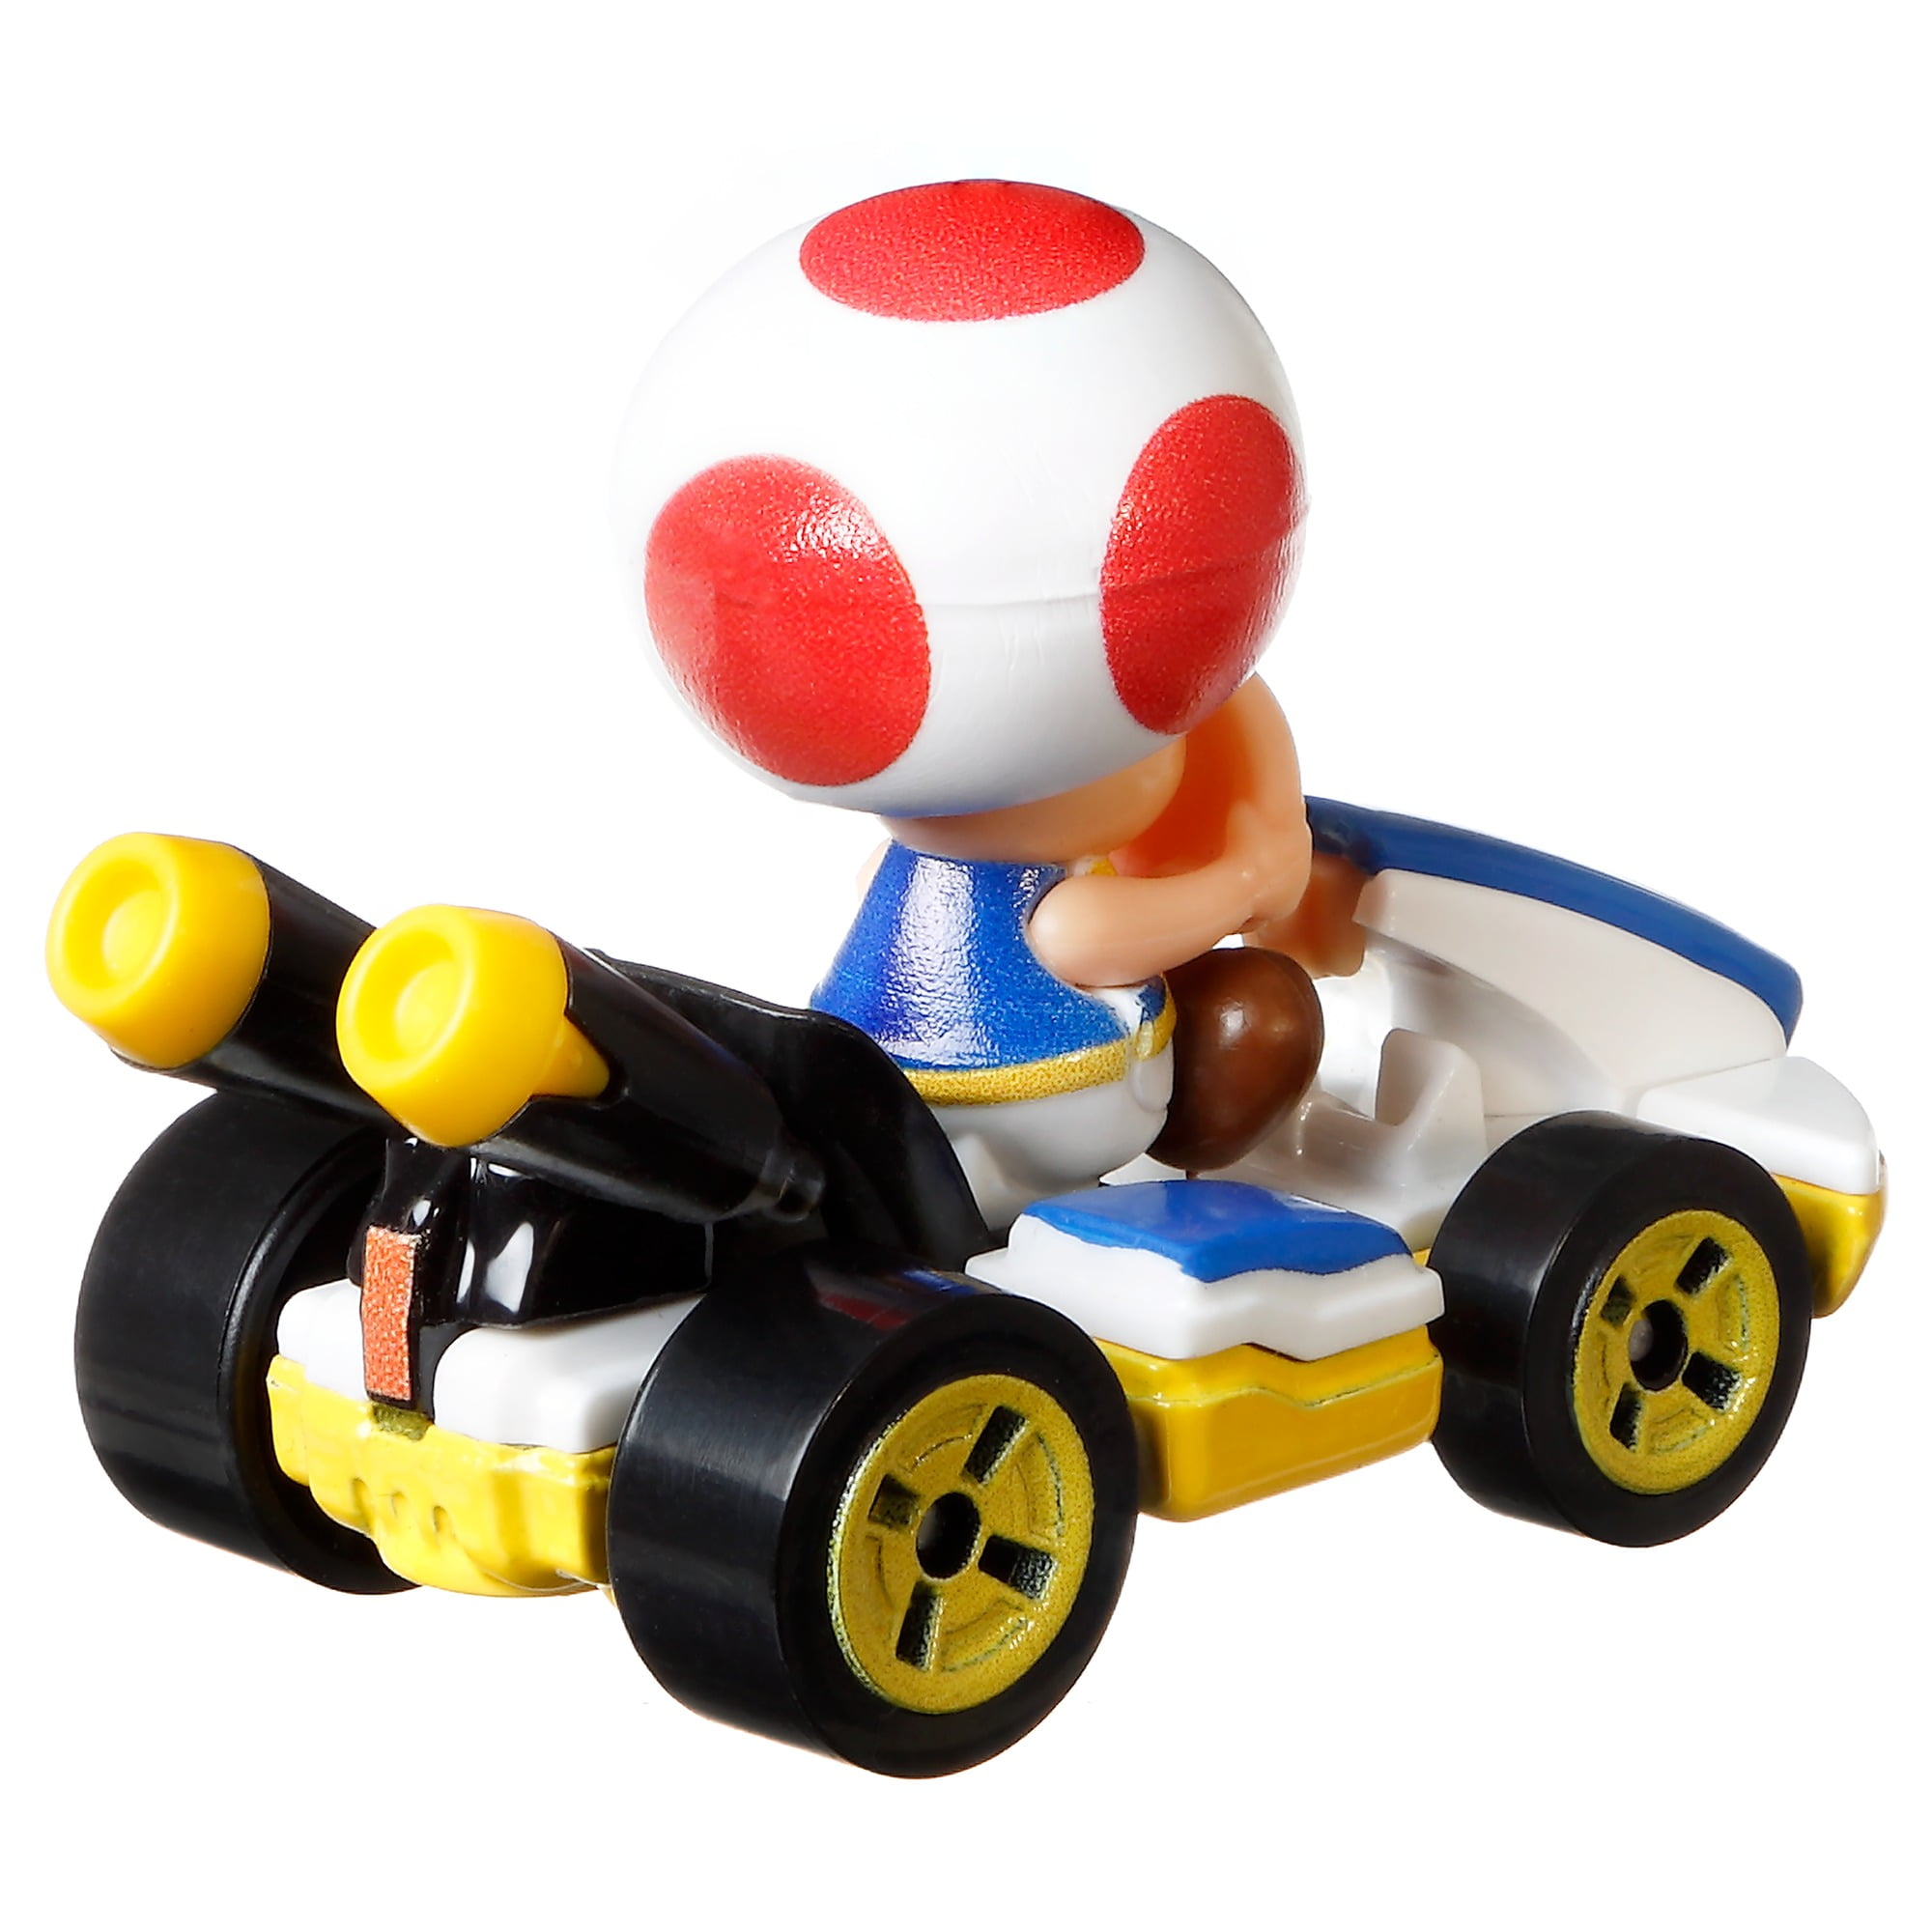 Mattel® Hot Wheels® Mario Kart™ Toad Mach 8 Toy Vehicle, 1 ct